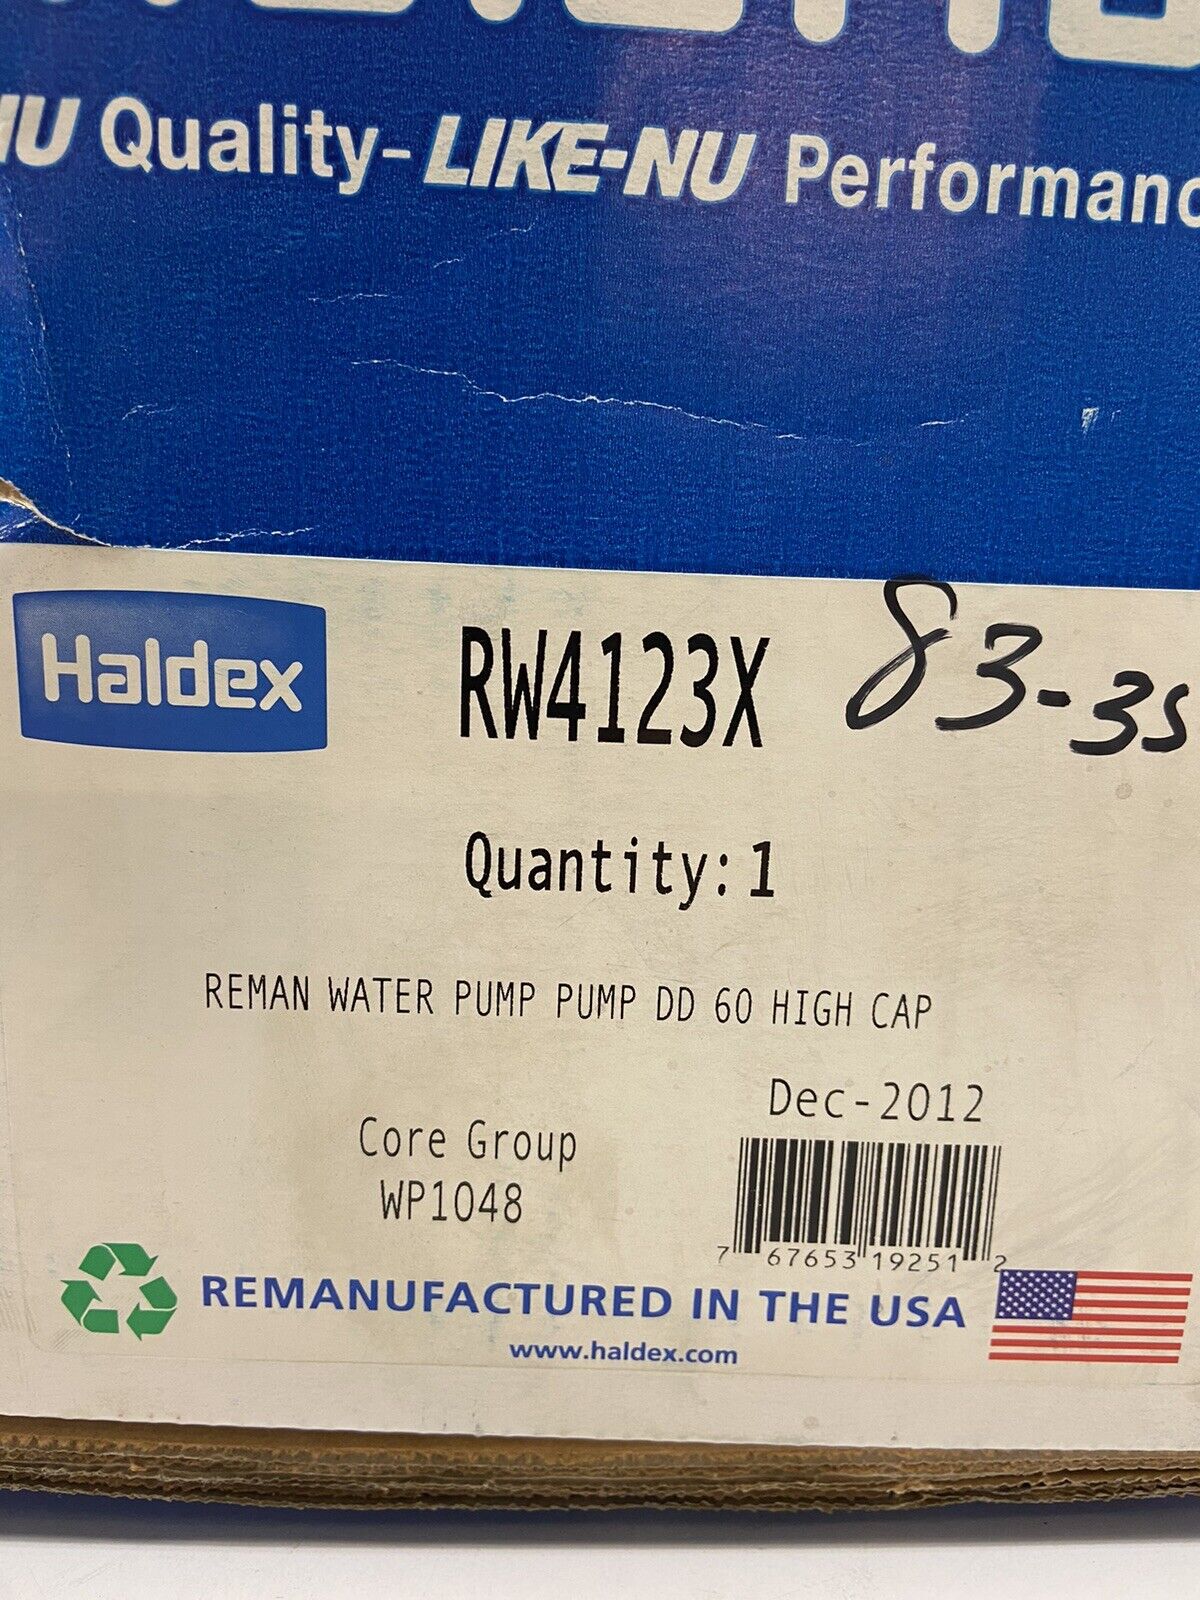 Midland RW4123X Water Pump DD 60 High Capacity Haldex